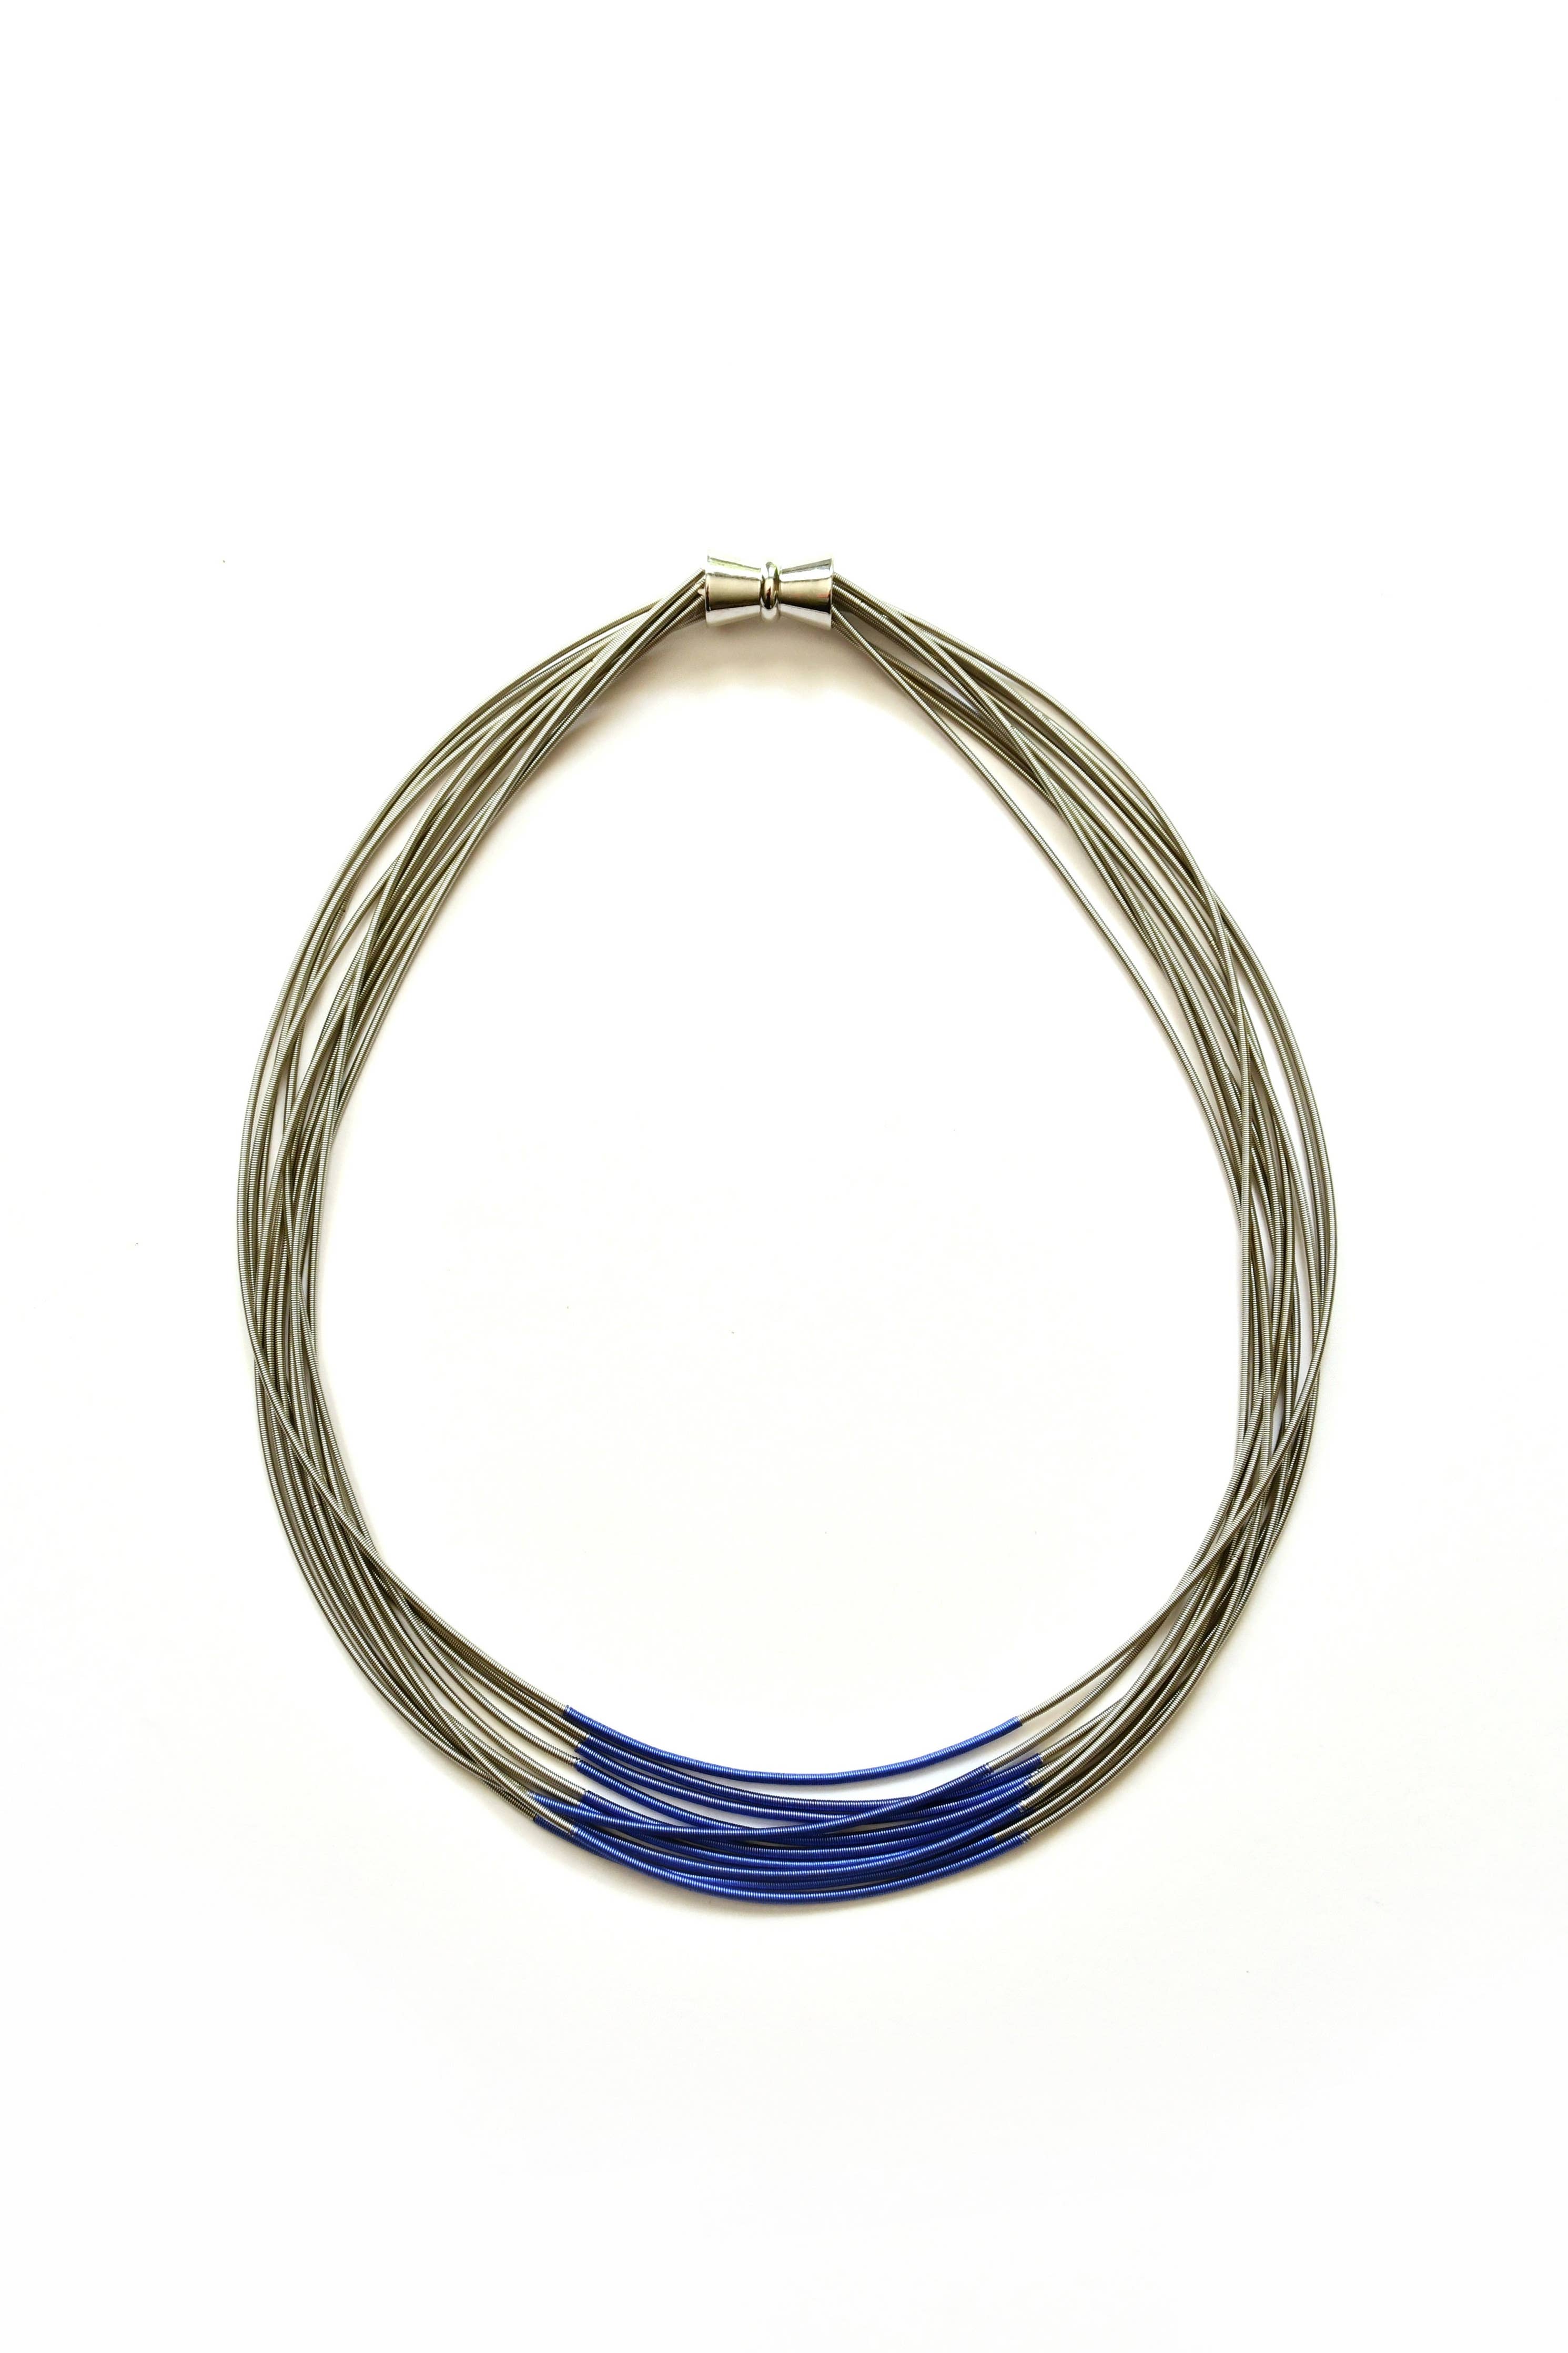 Sea Lily - S107D - Multi Strand Silver Wire Necklace With Blue Segment